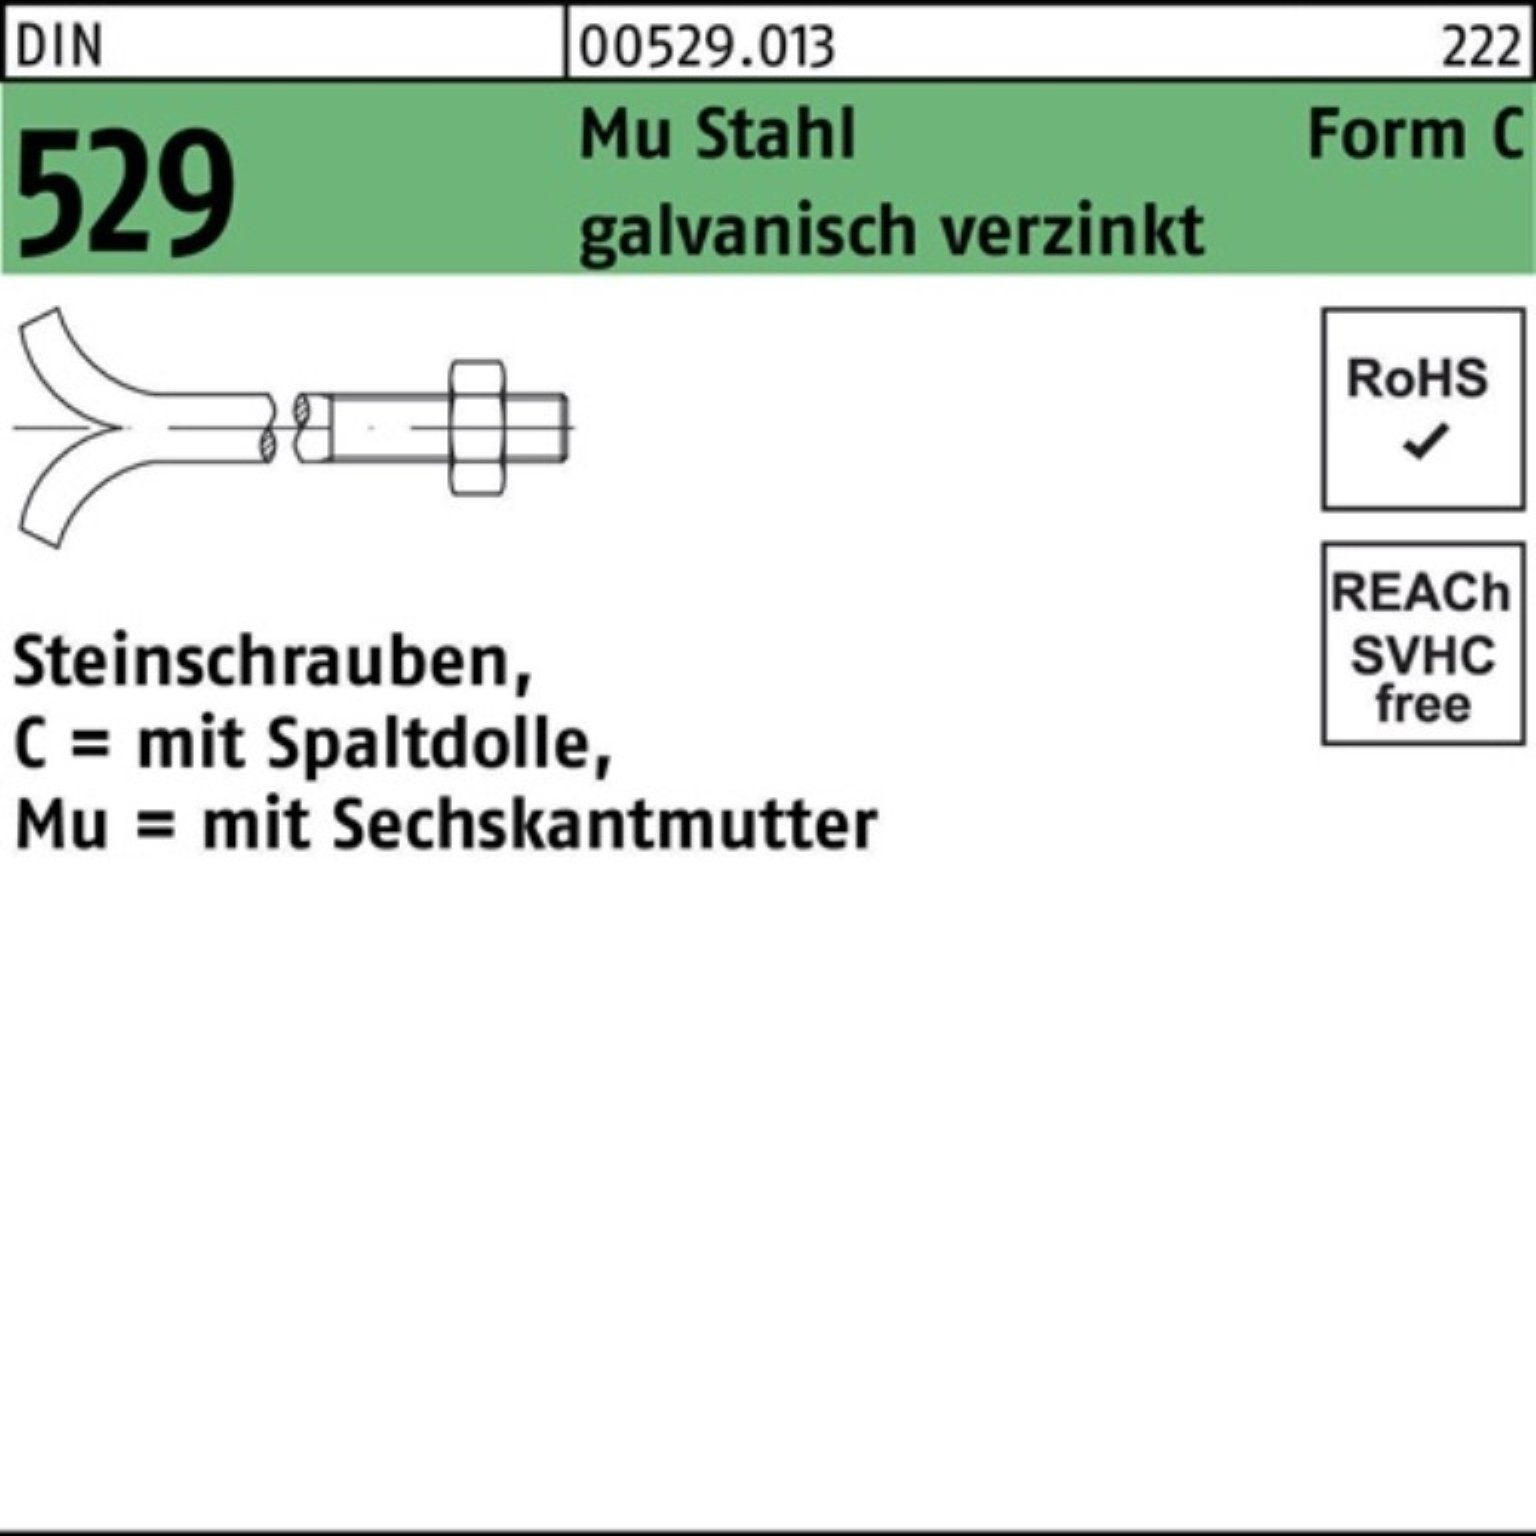 529 100er Steinschraube Schraube Spaltdolle/6-ktmutter Reyher Mu CM 3. 12x300 DIN Pack